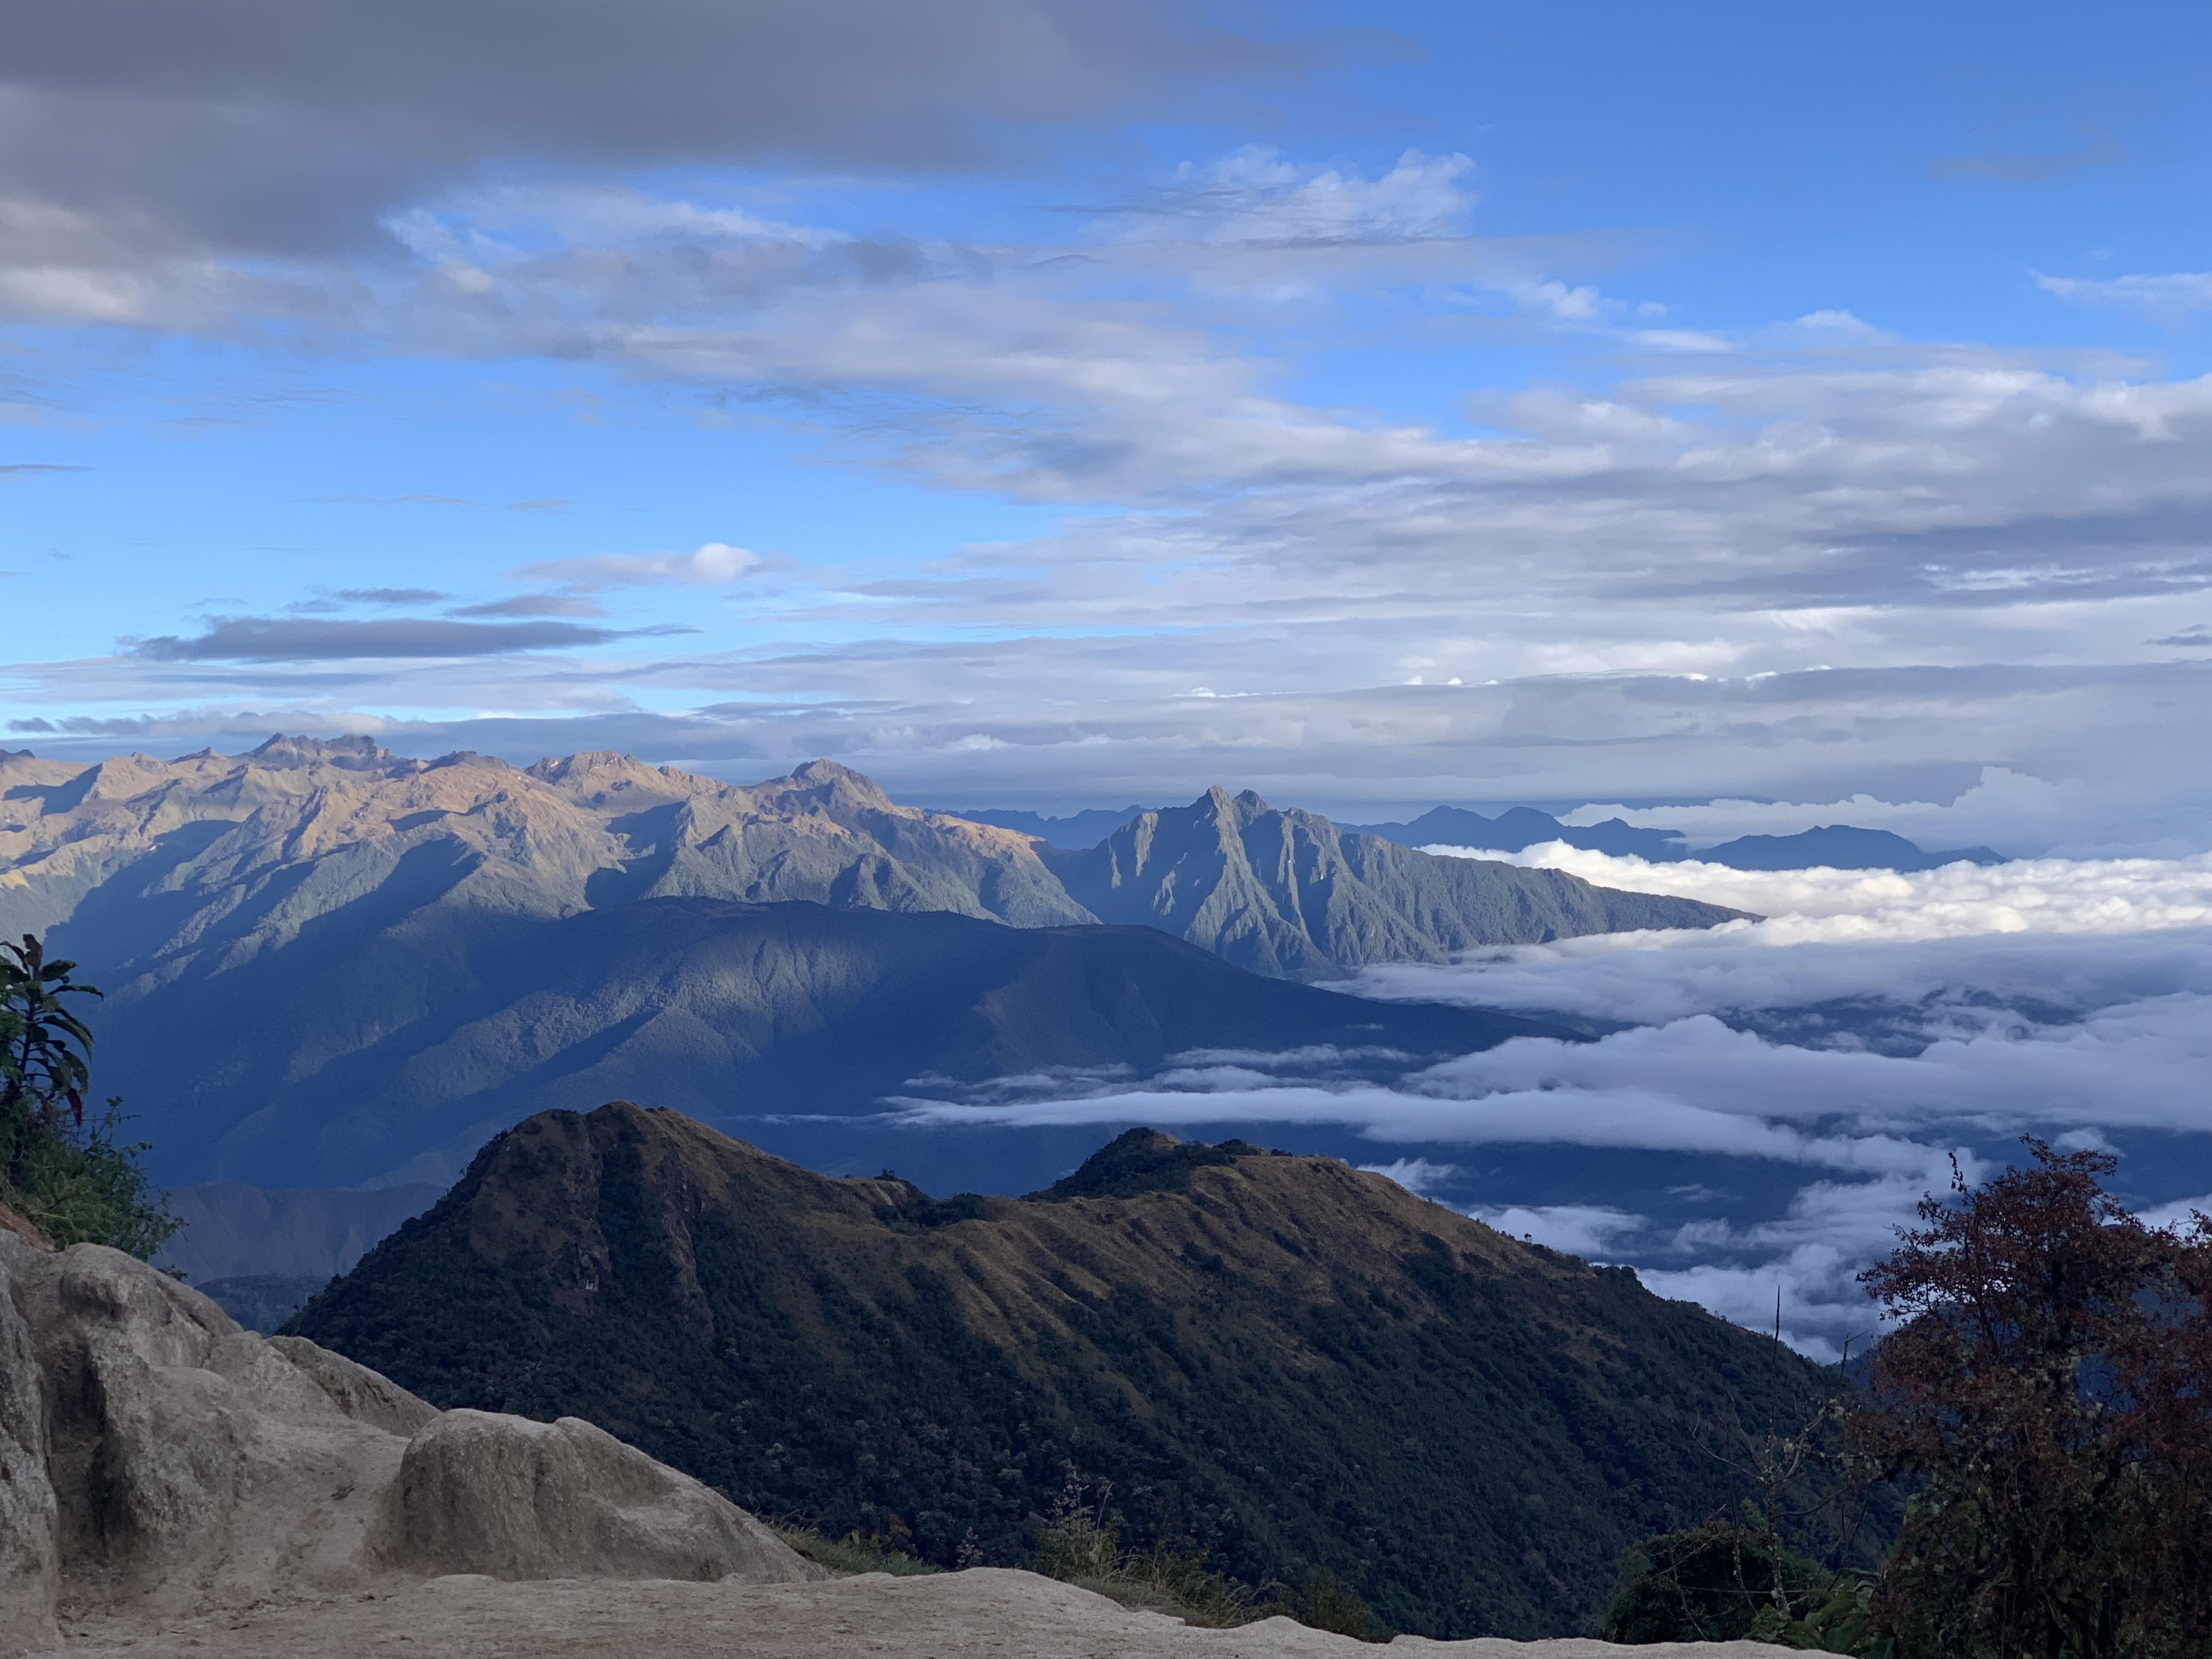 High above Machu Picchu